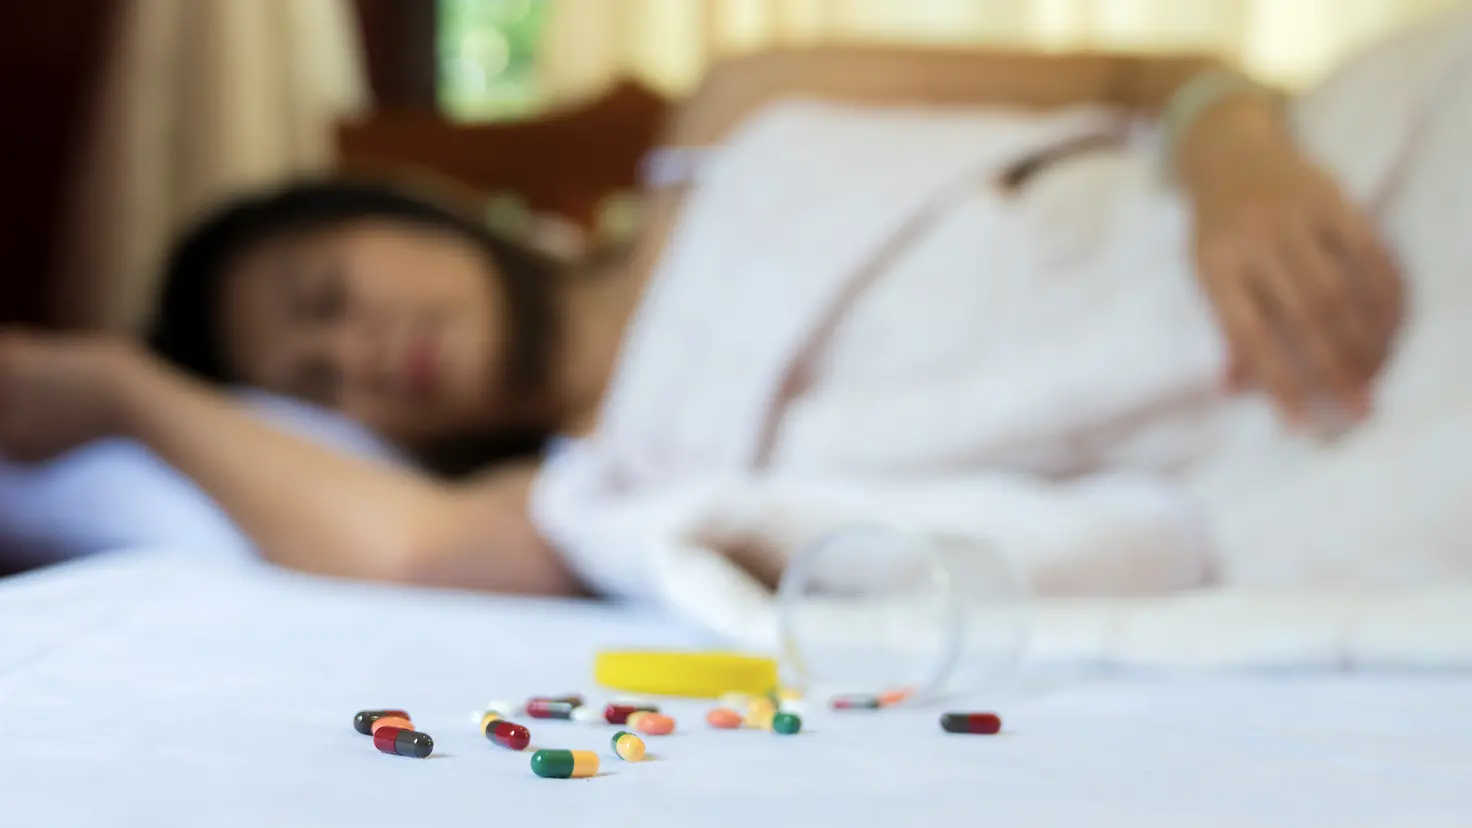 Eine Frau liegt schlafend im Bett, vor ihr liegt ein umgekippter Becher mit Tabletten.